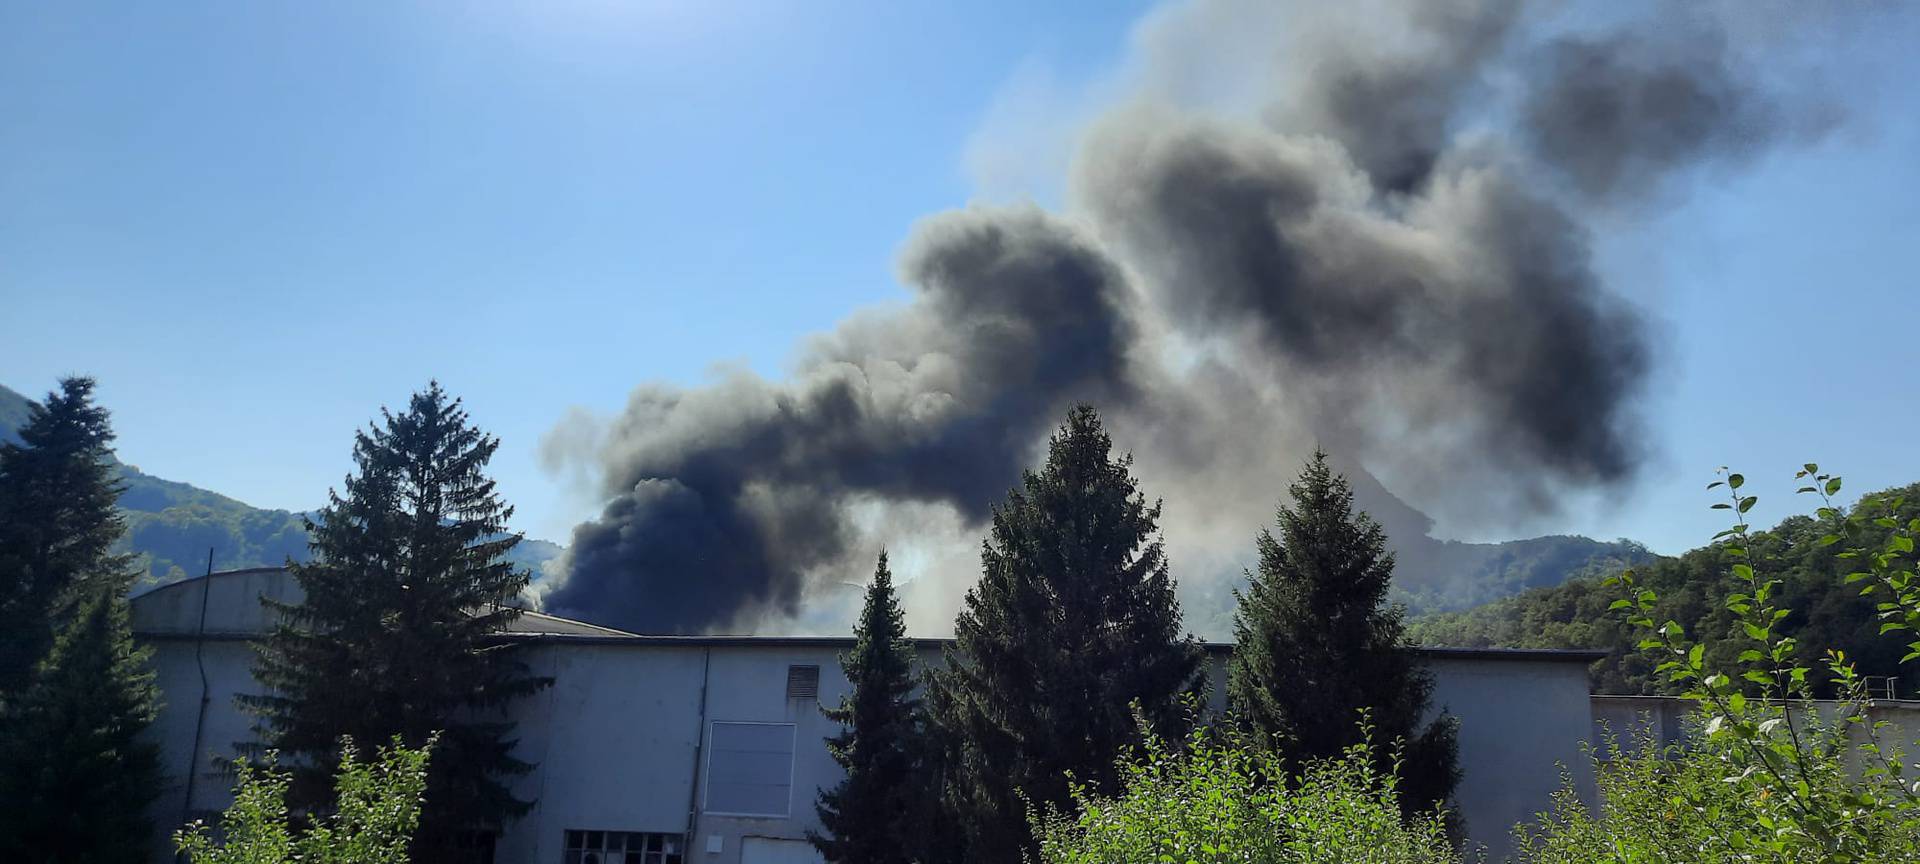 Crni dim uplašio je stanovnike Krapine: Vatrogasci na terenu